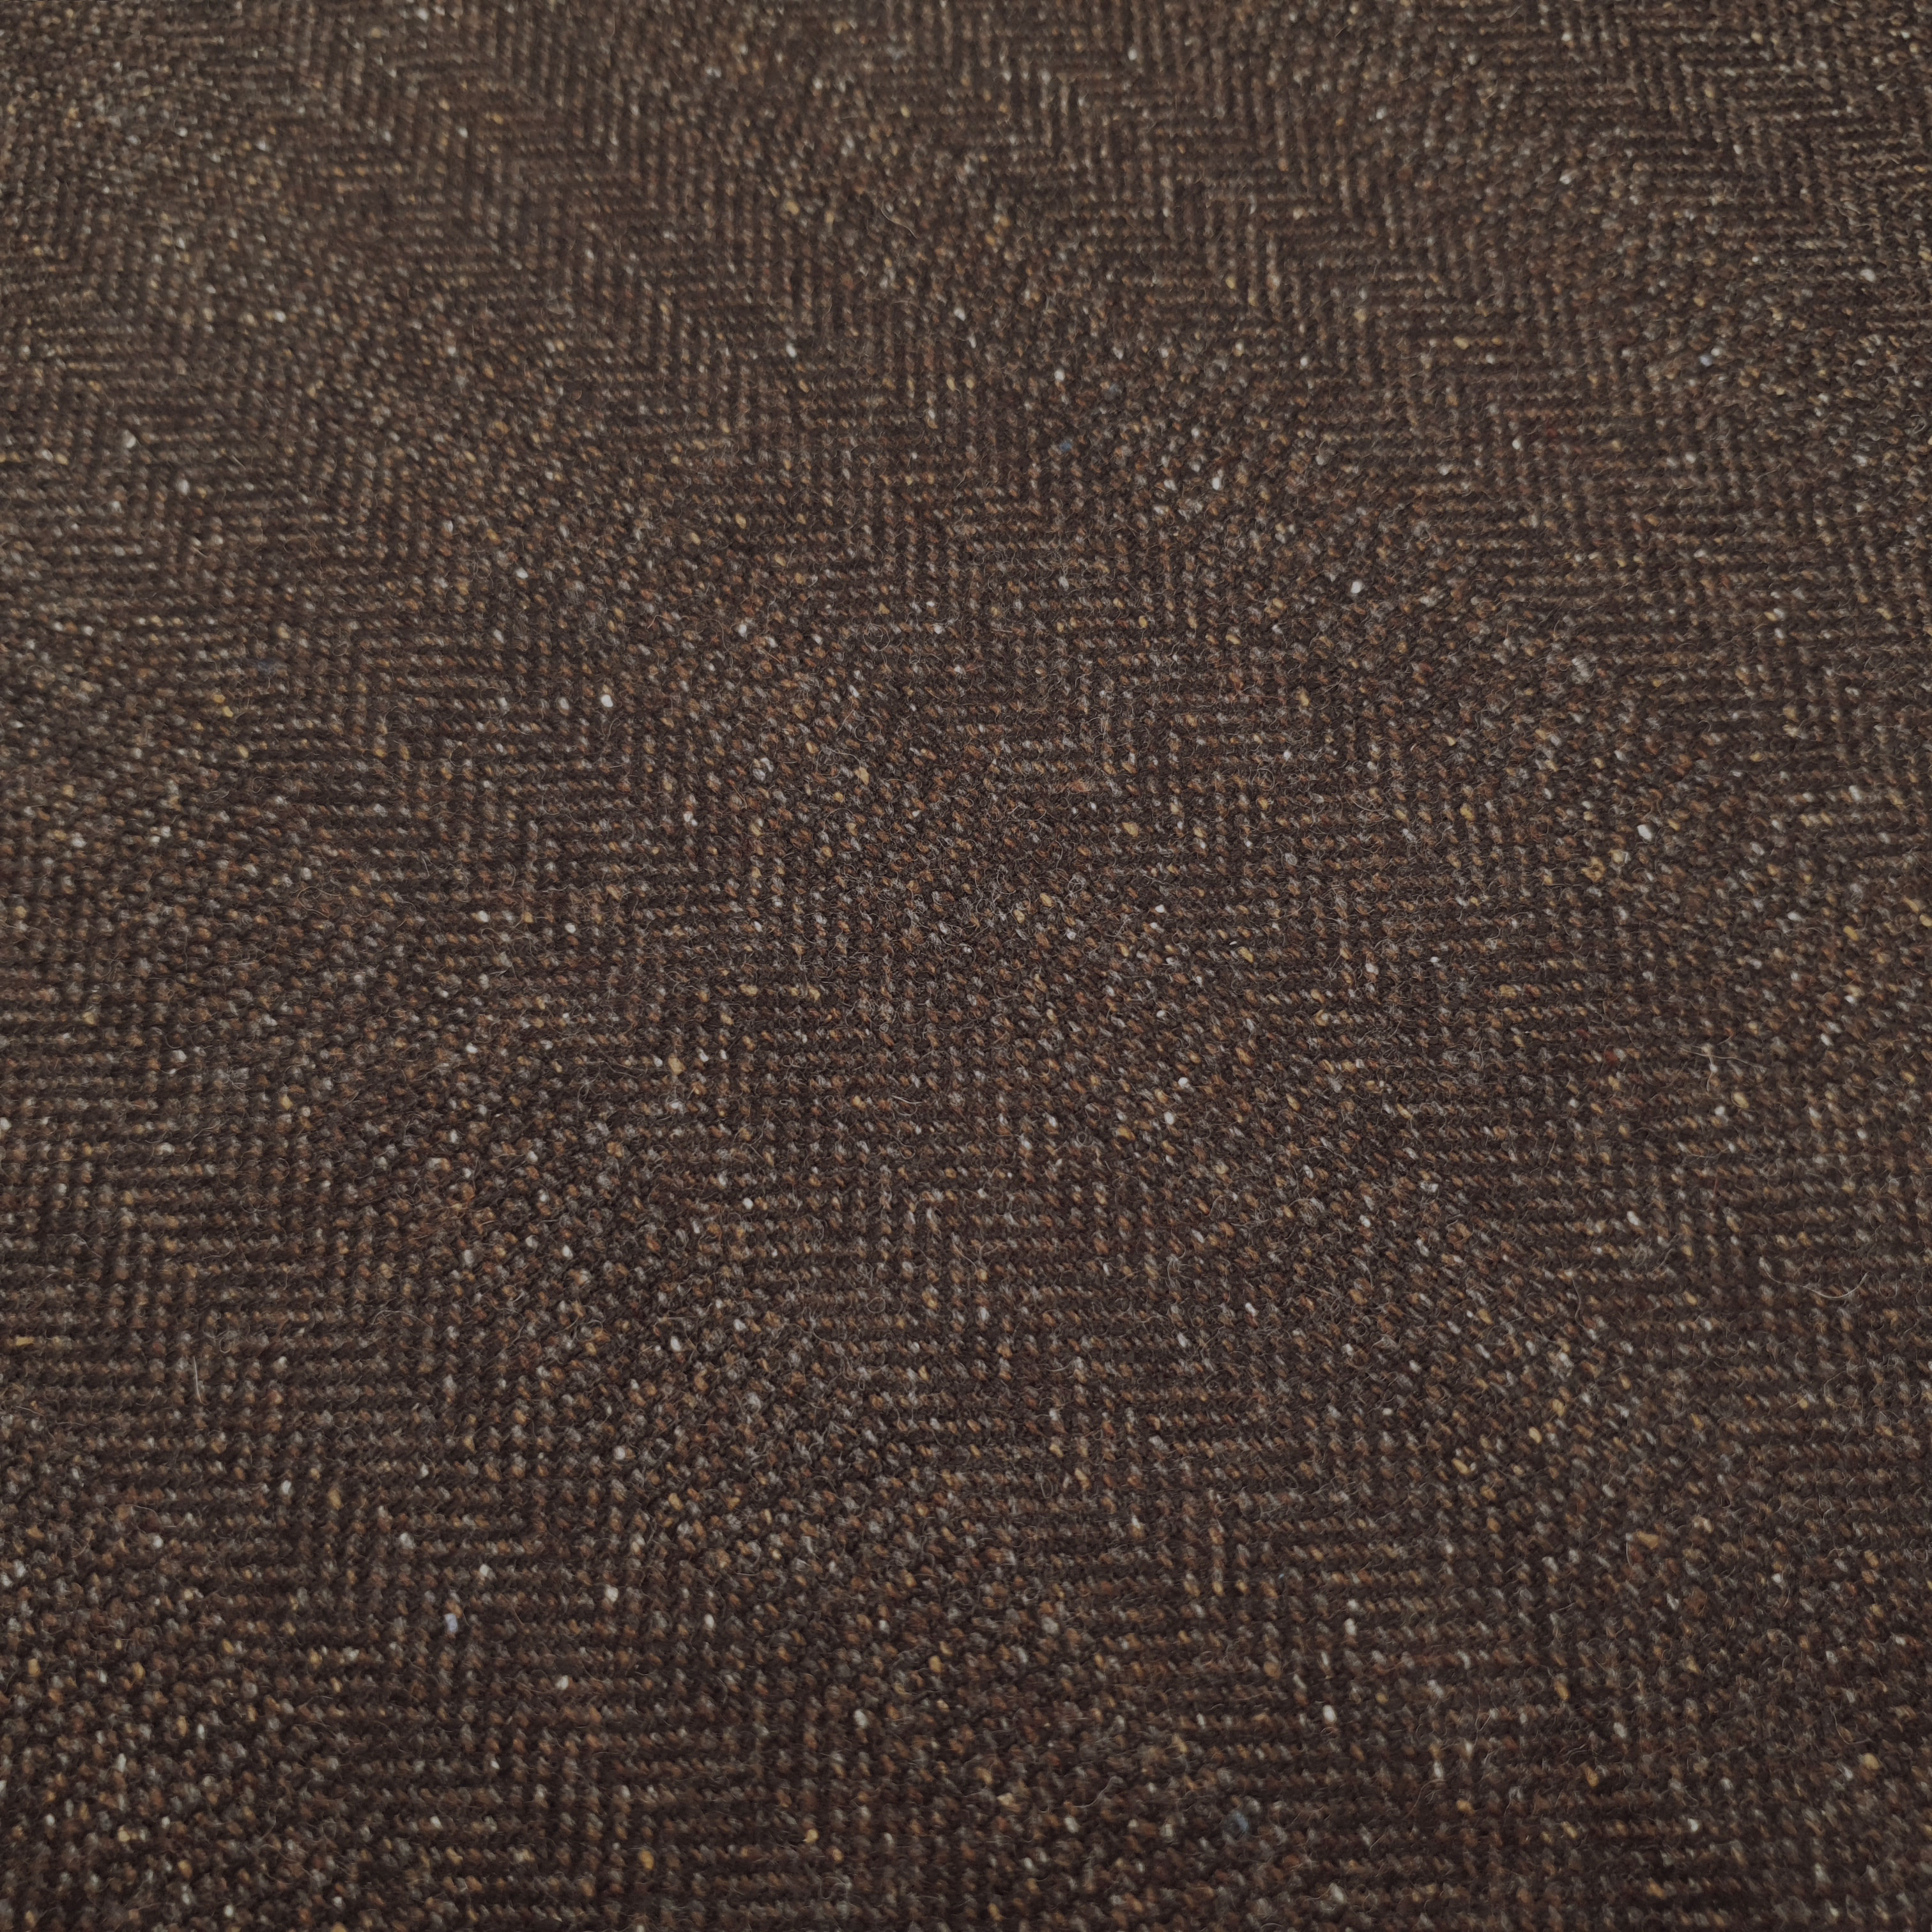 Dorin - Sildebensmønstret uldtørklæde - Mørkebrun melange